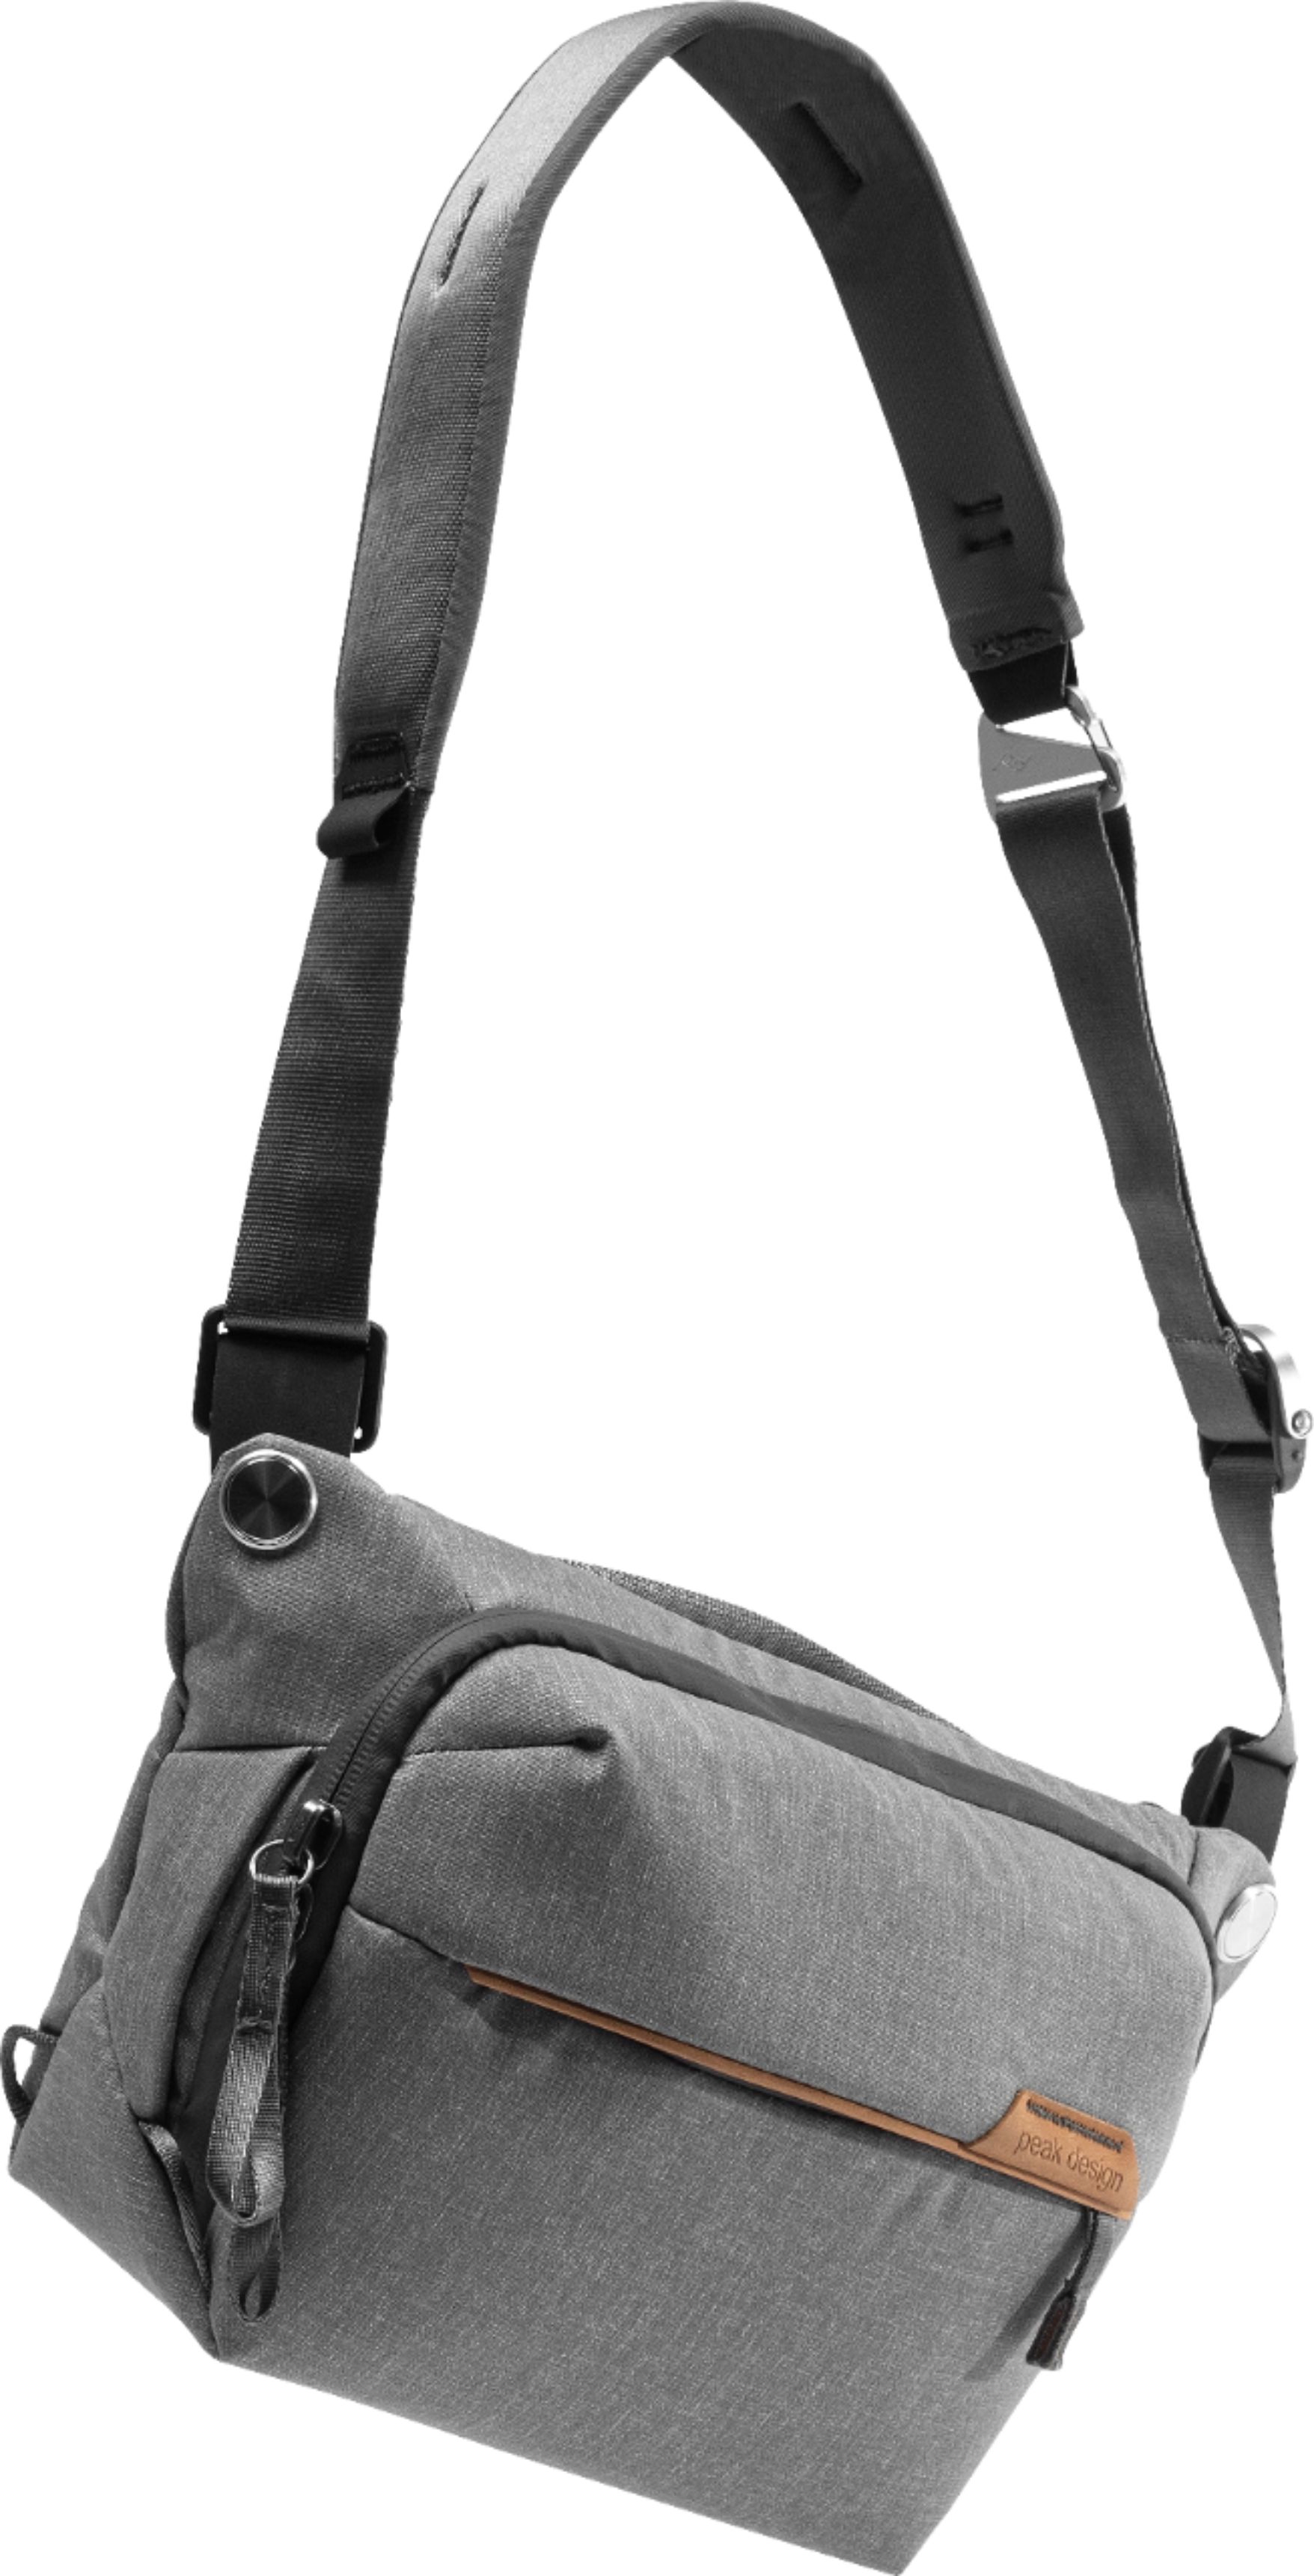 Left View: Peak Design - Everyday Backpack V2 30L - Charcoal